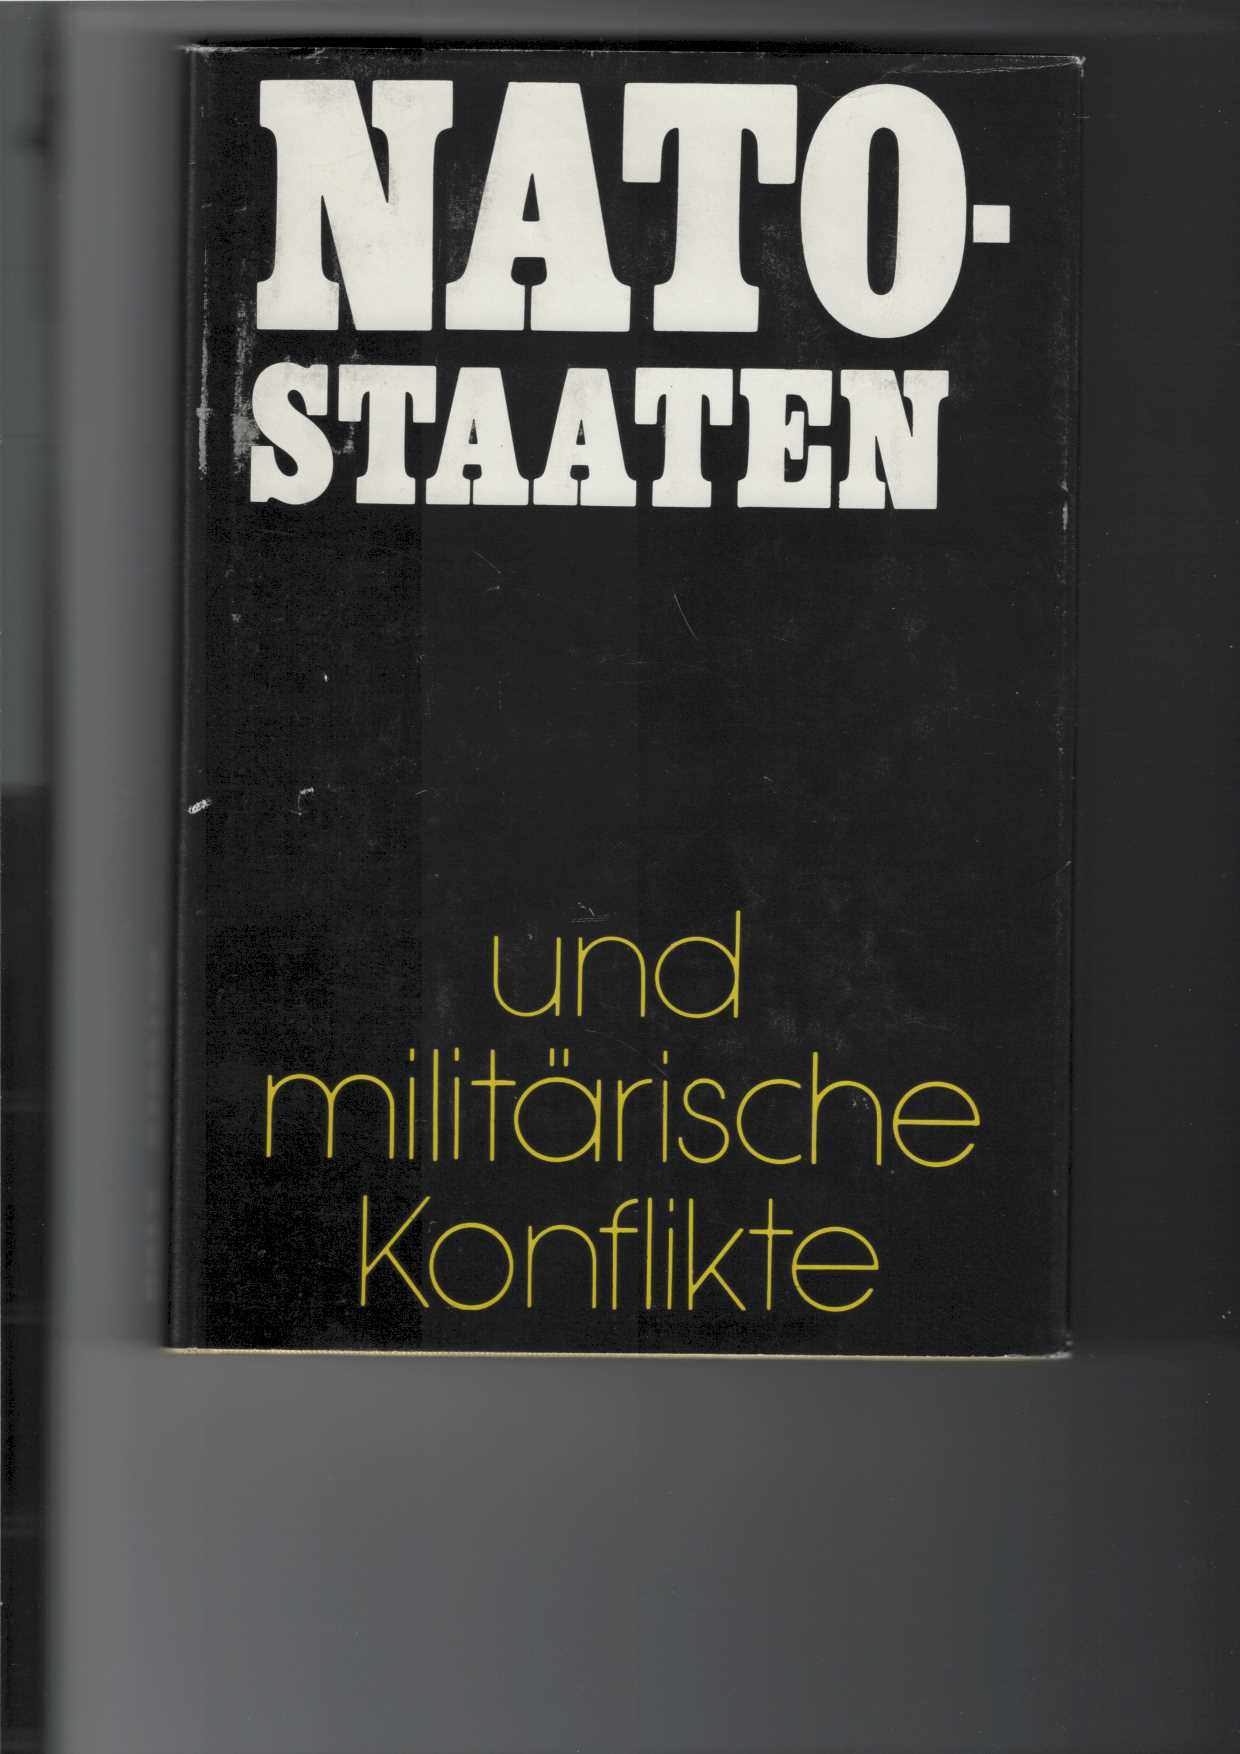 Nato-Staaten und militärische Konflikte. Militärhistorischer Abriß. Mit 5 Karten. - Shilin, P. A., Et Al., Eds